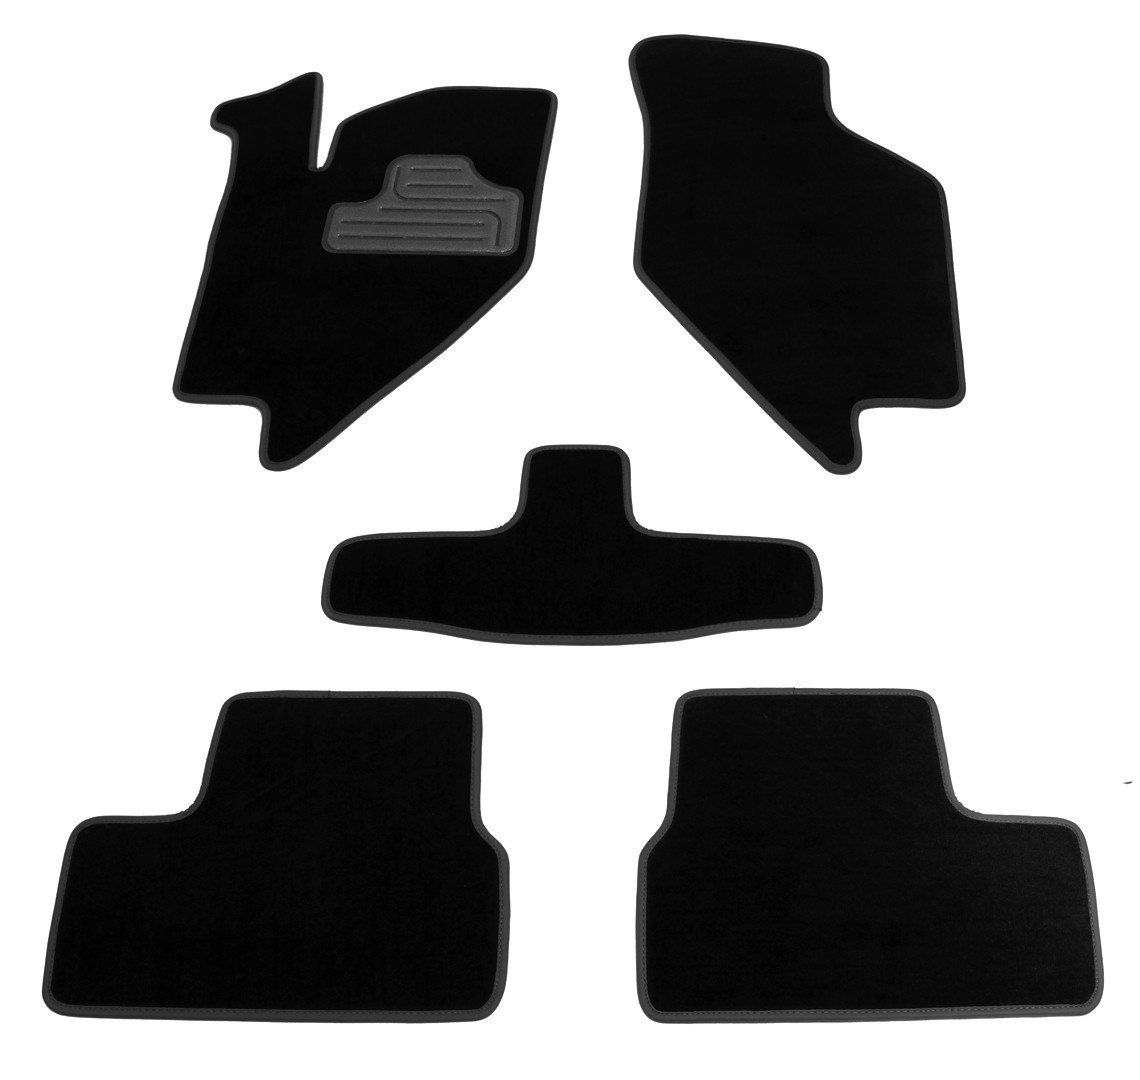 Ворсові килимки в салон авто Pro-Eco на у Ваз Гранта 2190 SD 11-18 Lada чорні